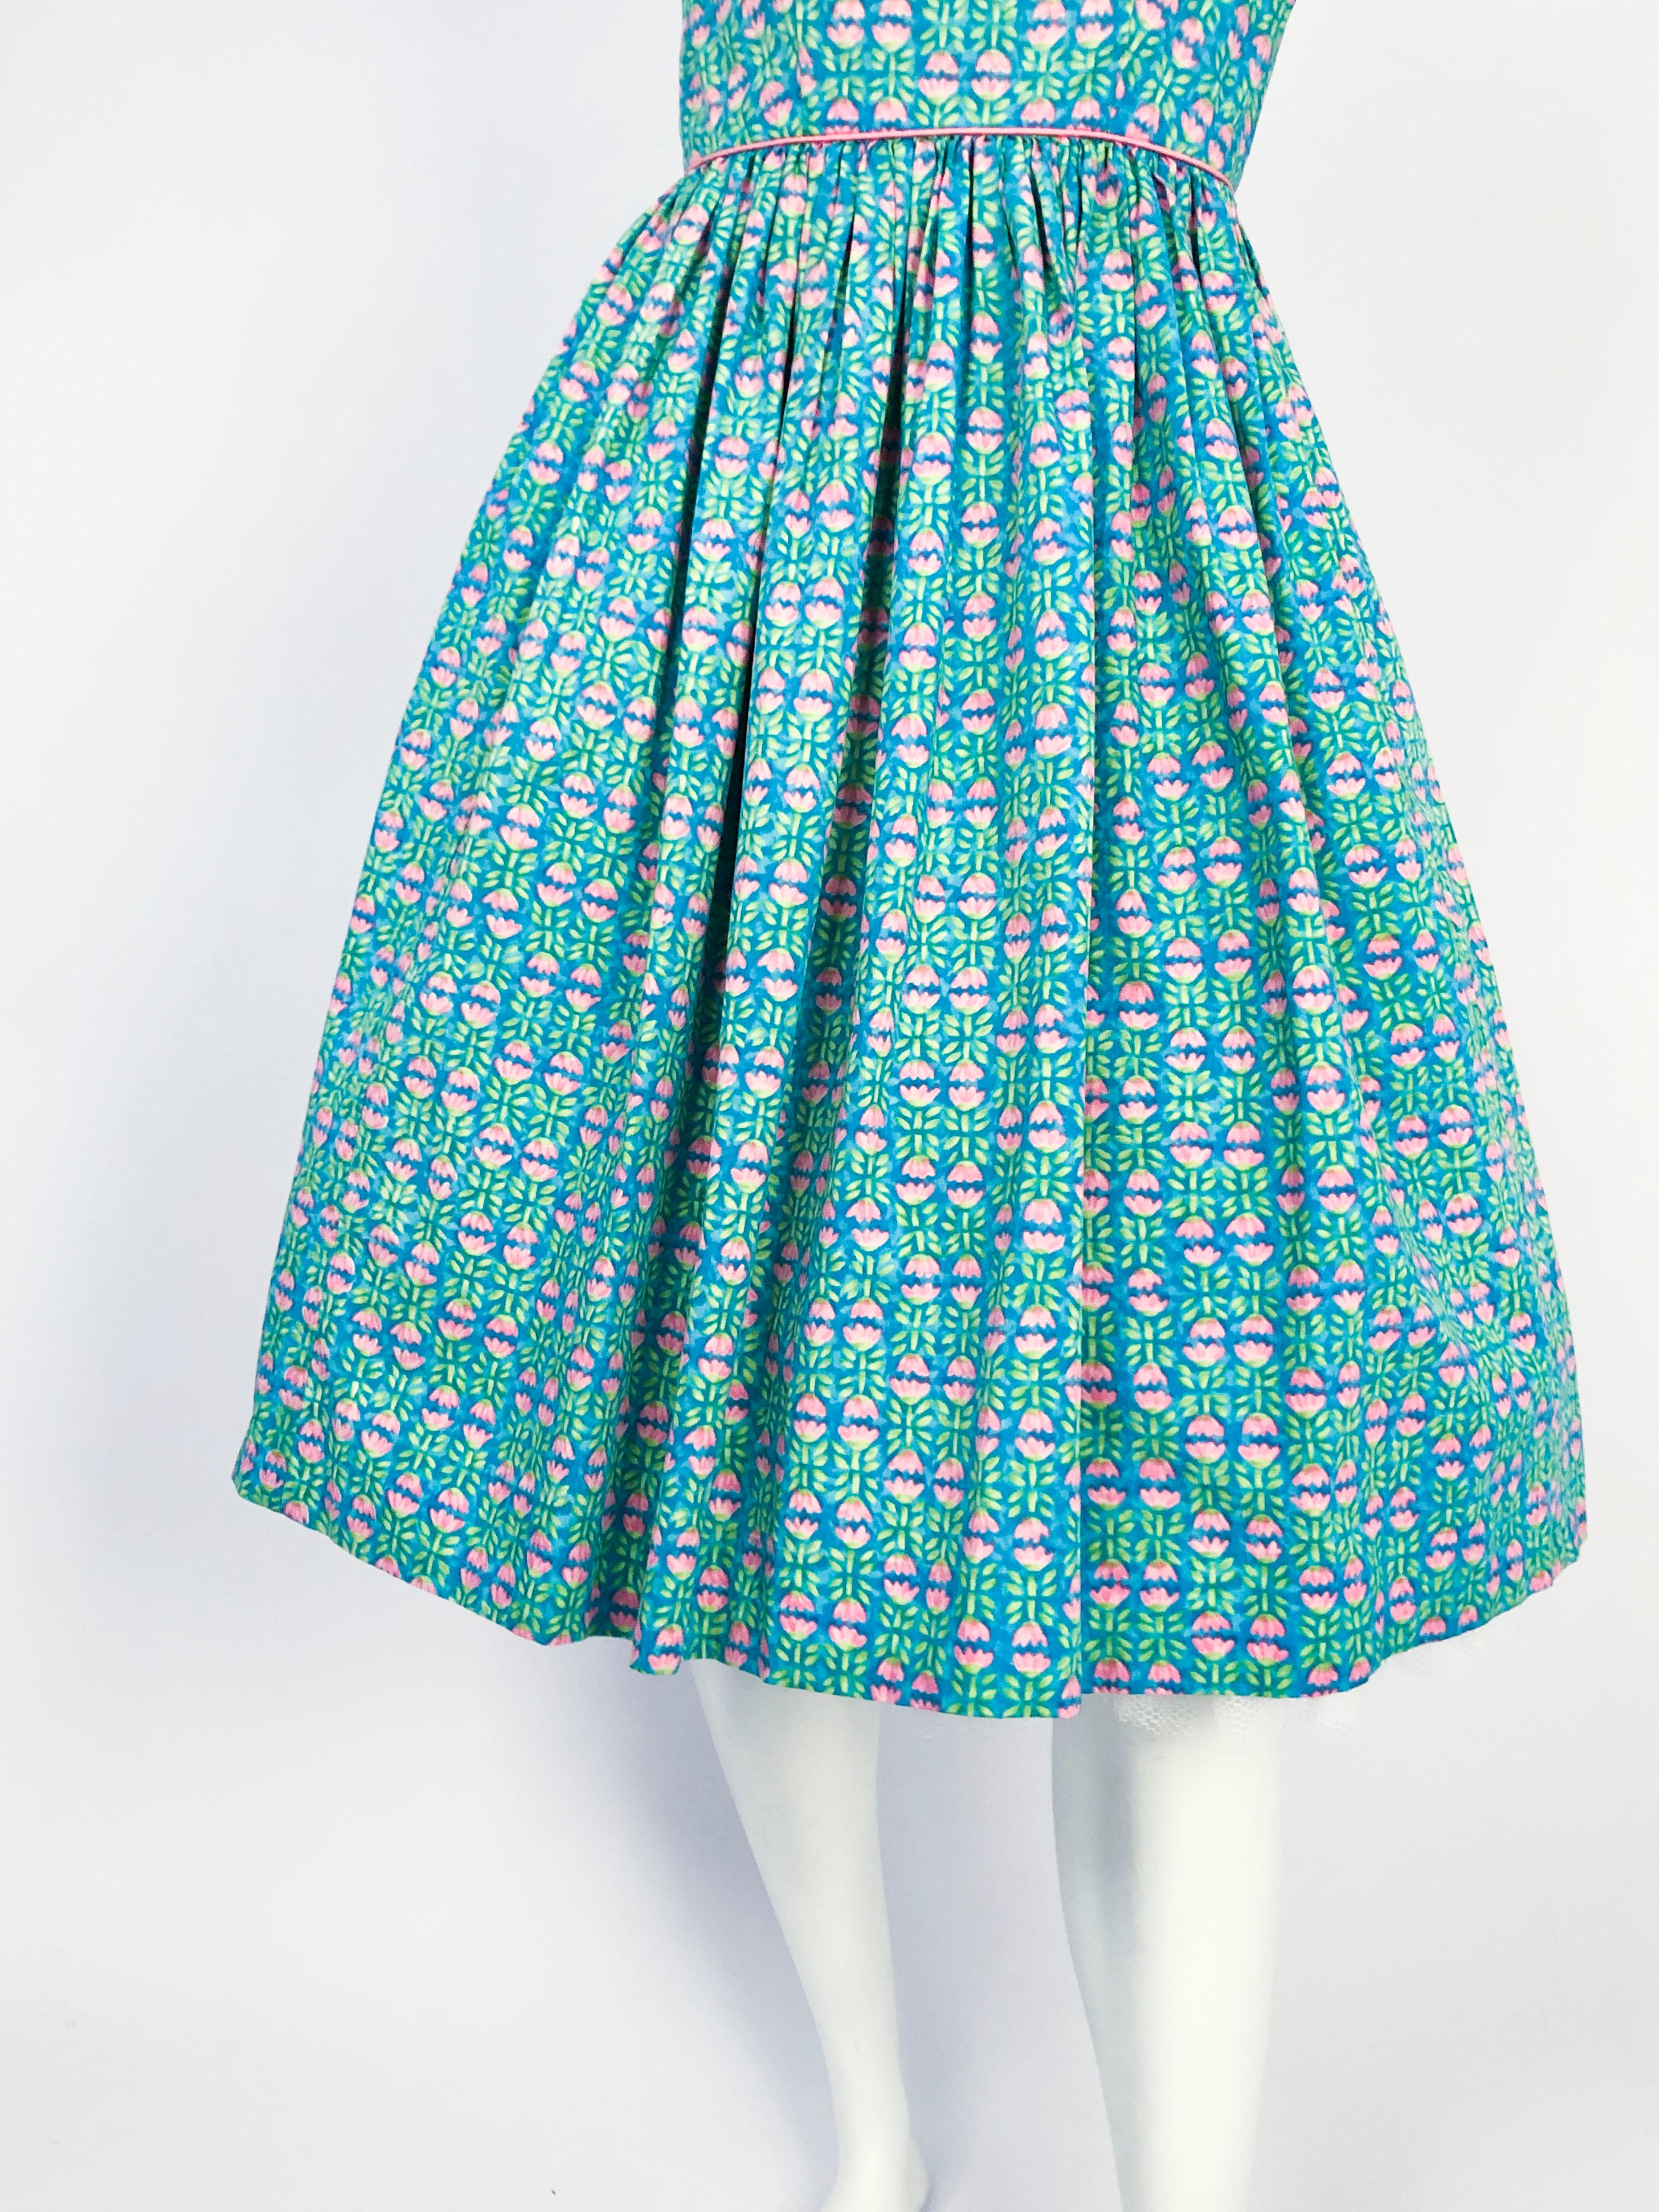 robe d'été imprimée Tulip de Lanz des années 1960. La couleur de base est un bleu aqua avec des tulipes rose layette et des feuilles vertes. La robe a un corsage ajusté avec une jupe complète (photographiée avec un jupon qui n'est pas inclus), des